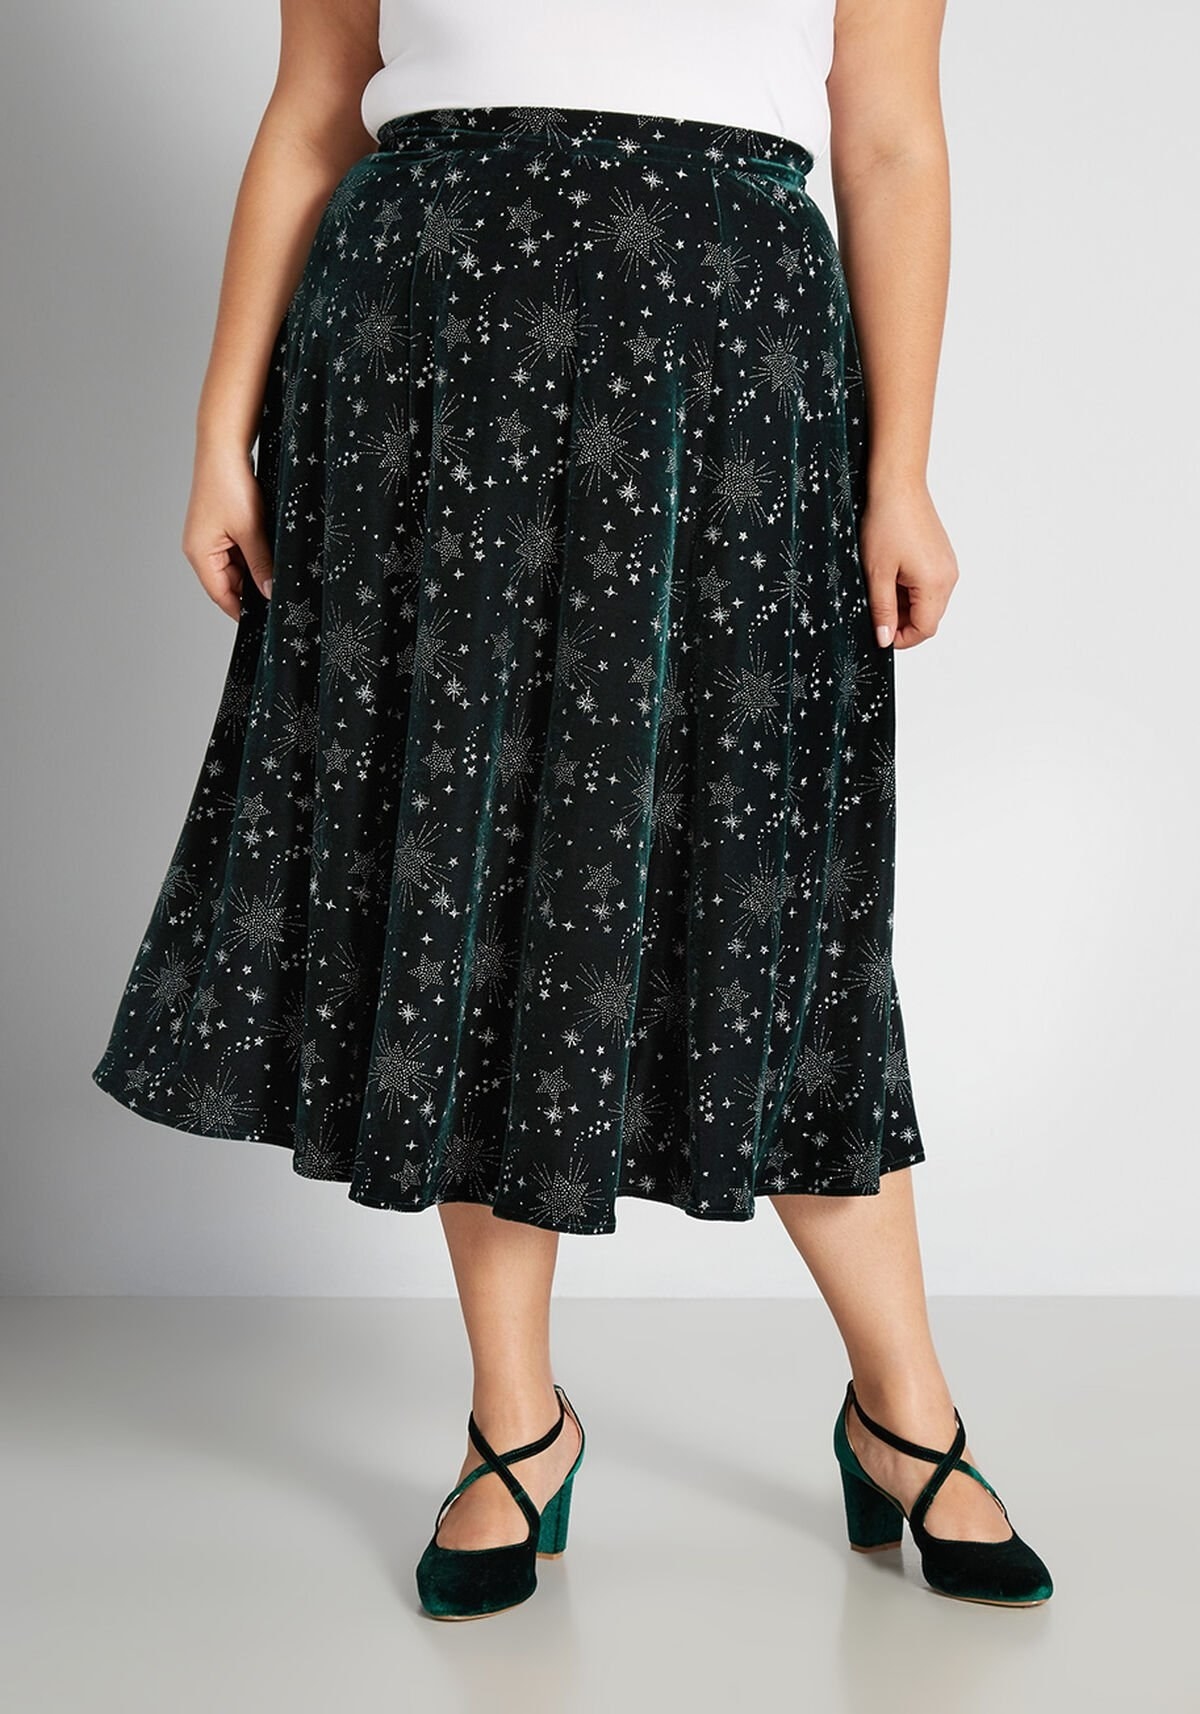 Model wearing star print skirt